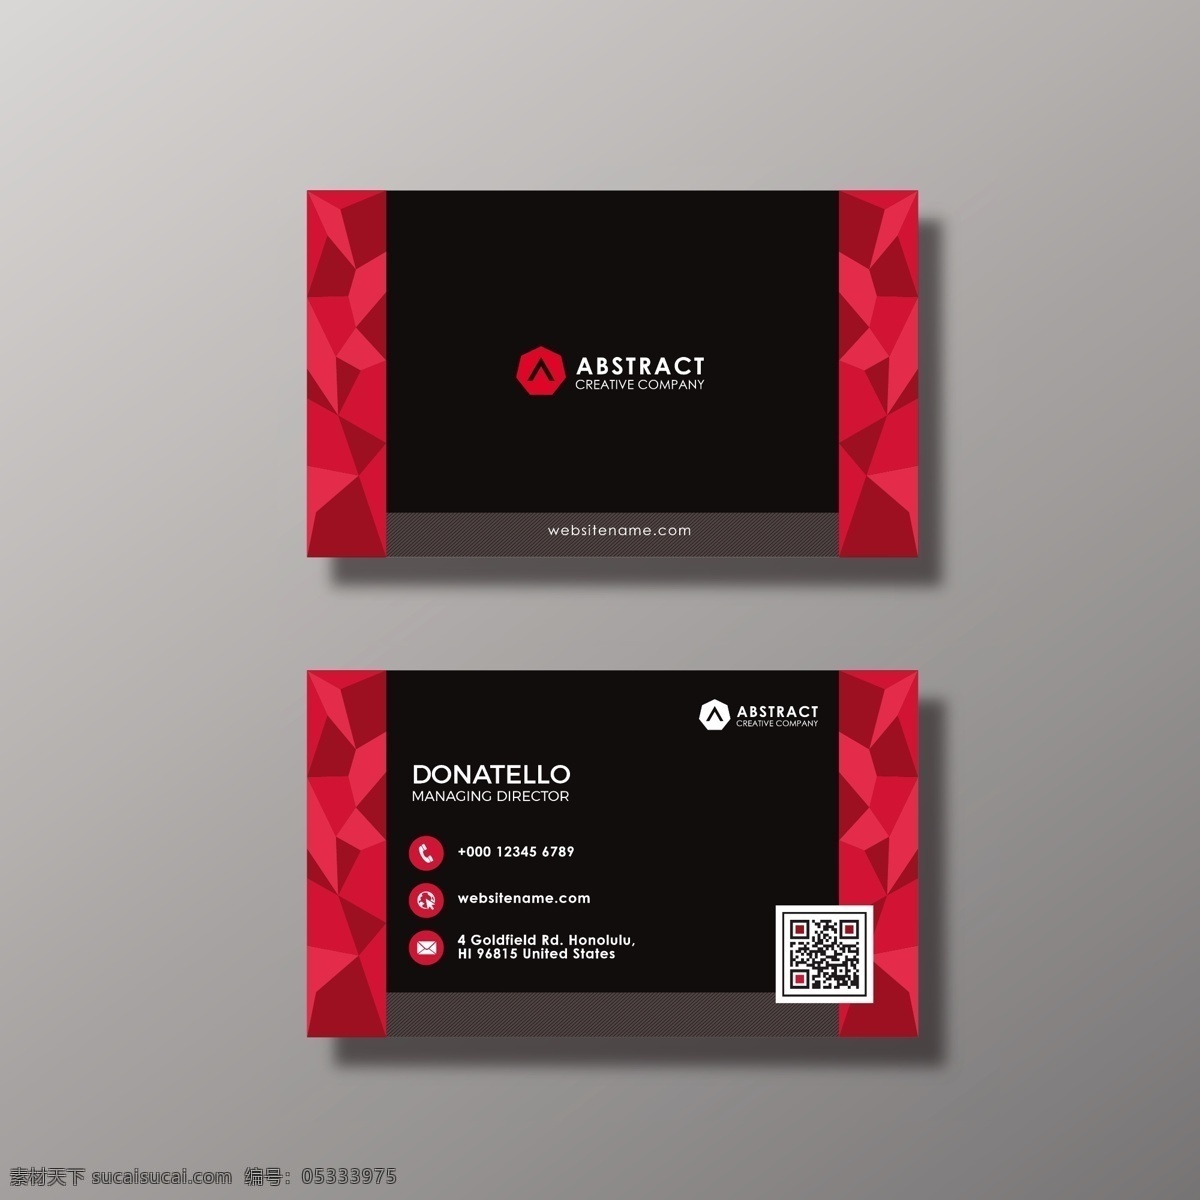 黑色 红色 抽象 名片设计 商标 名片 商业 卡片 模板 办公室 展示 文具 公司 抽象标志 企业标识 品牌 现代